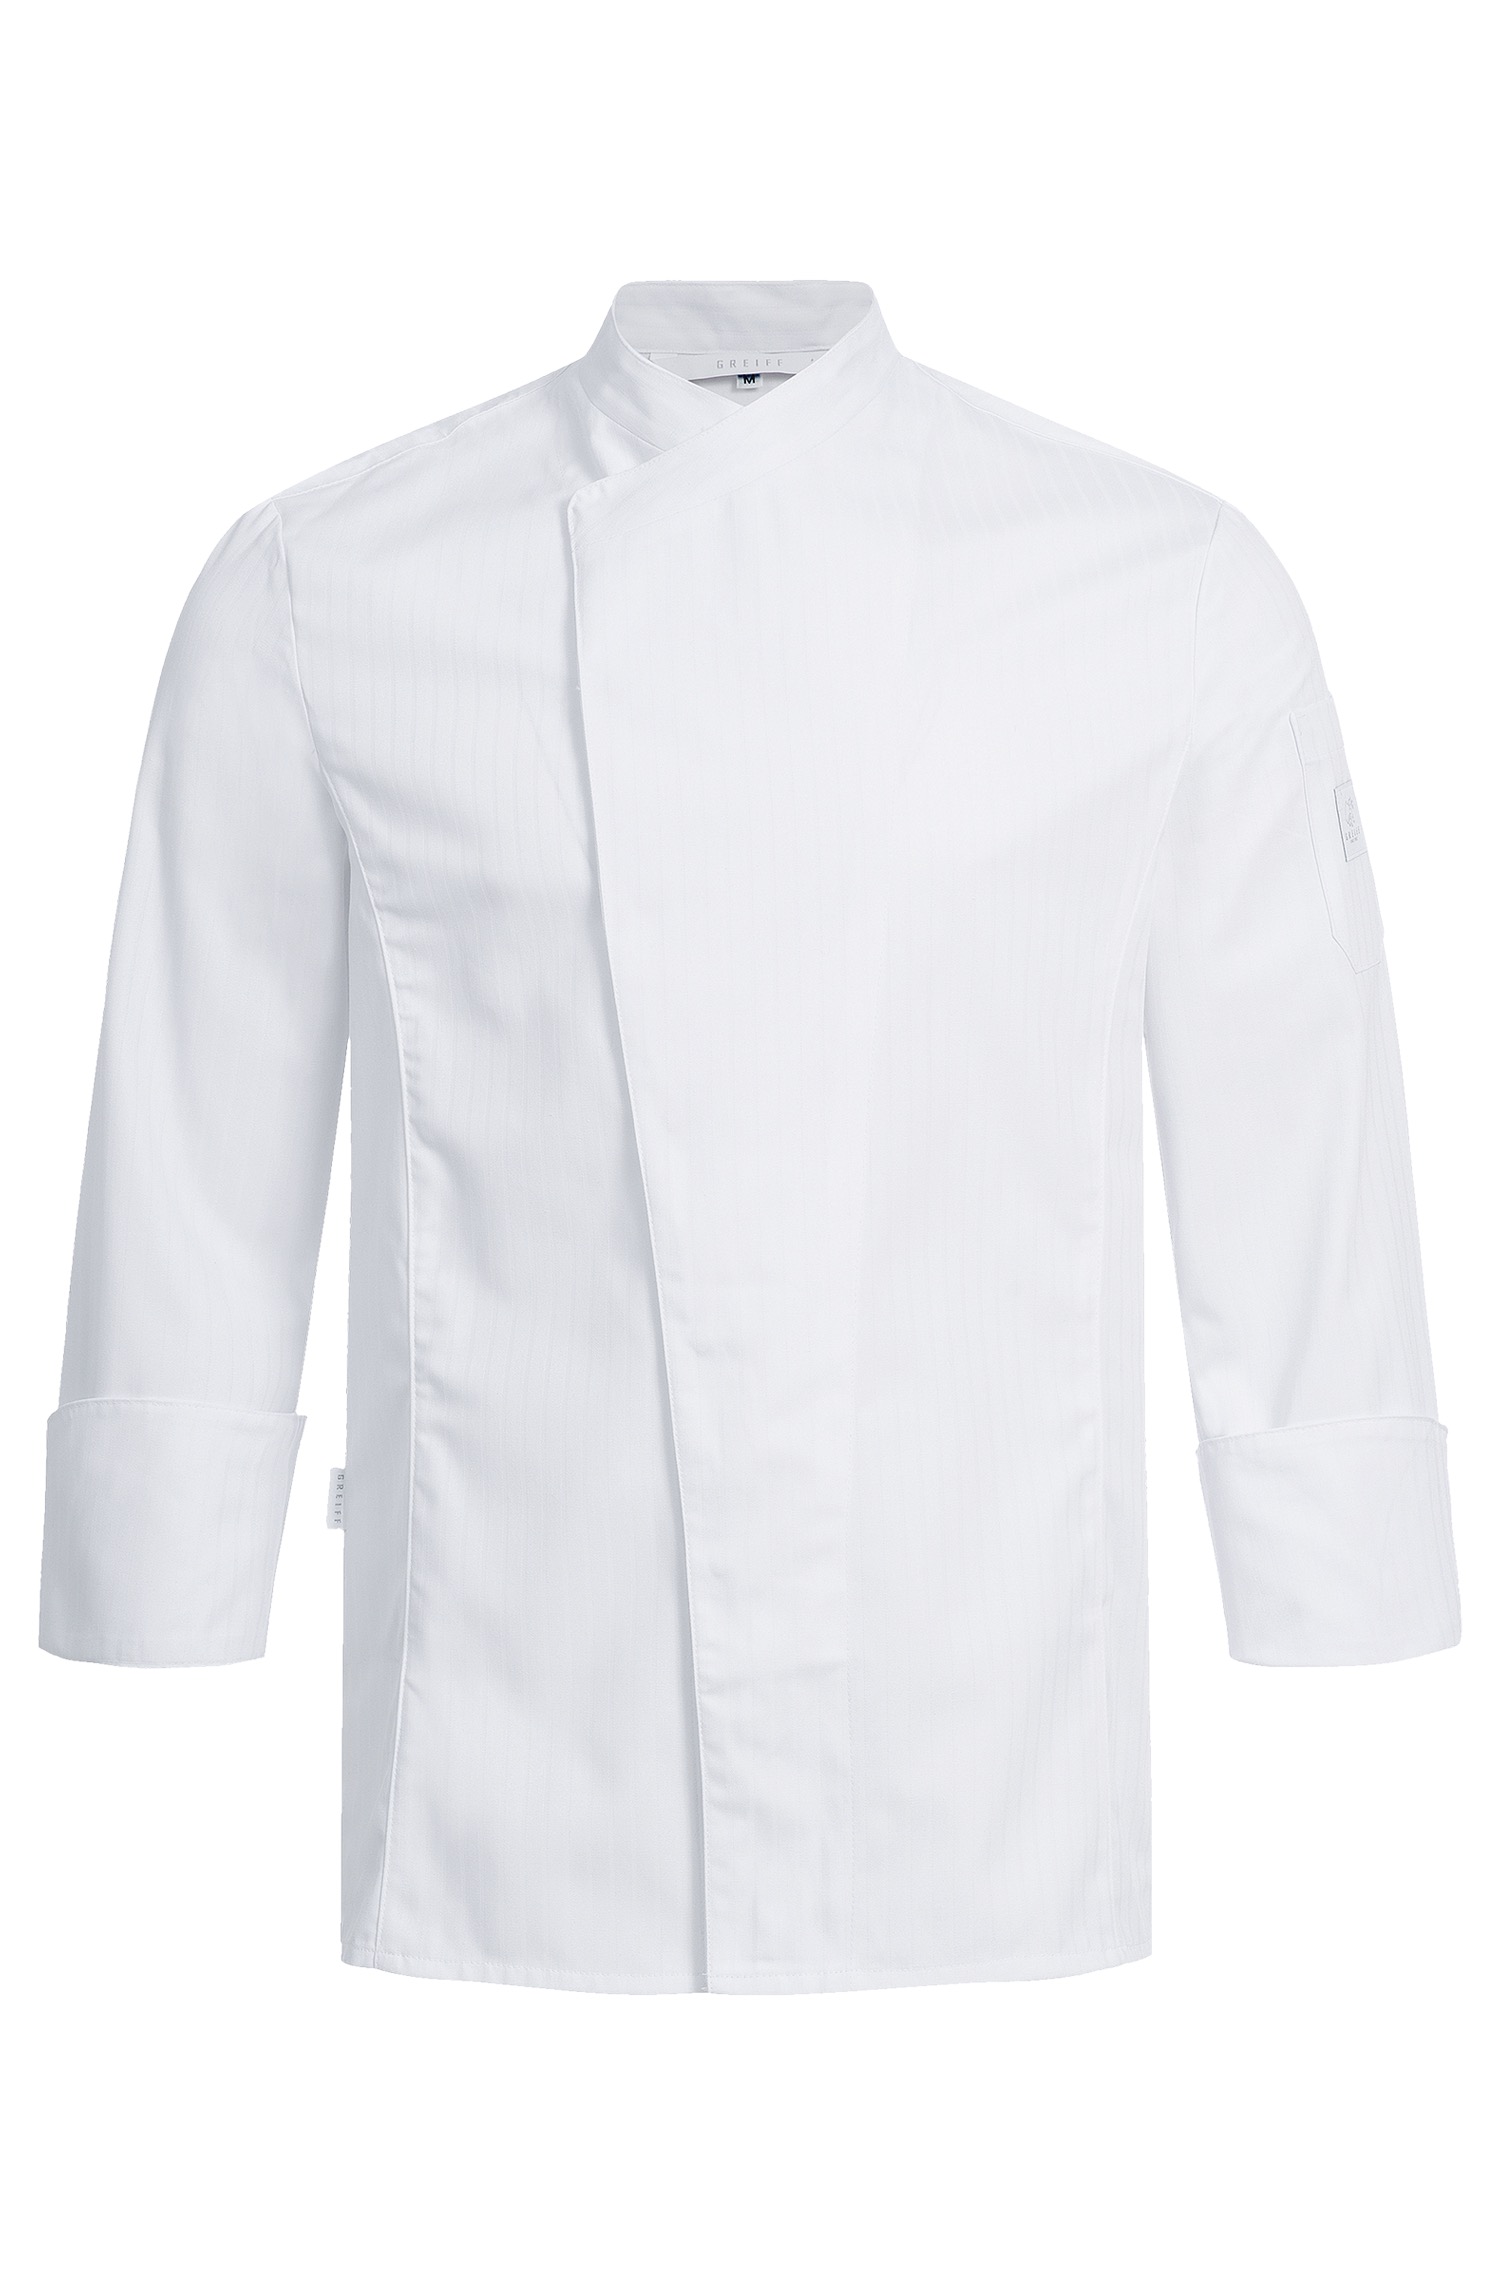 Men's Cooking Jacket RF 5544 Greiff® White Satin Stripe XL